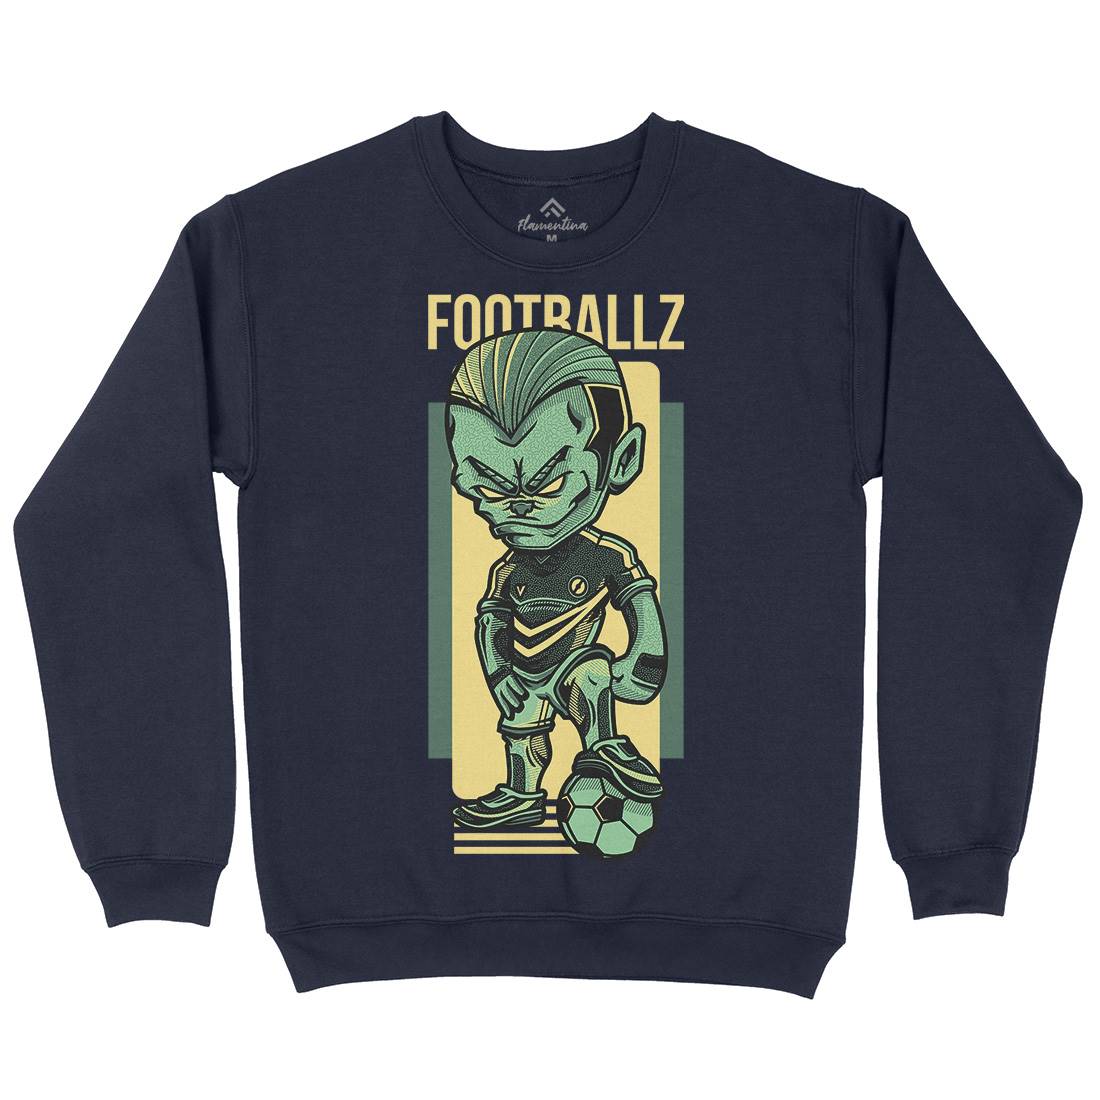 Football Kids Crew Neck Sweatshirt Sport D779